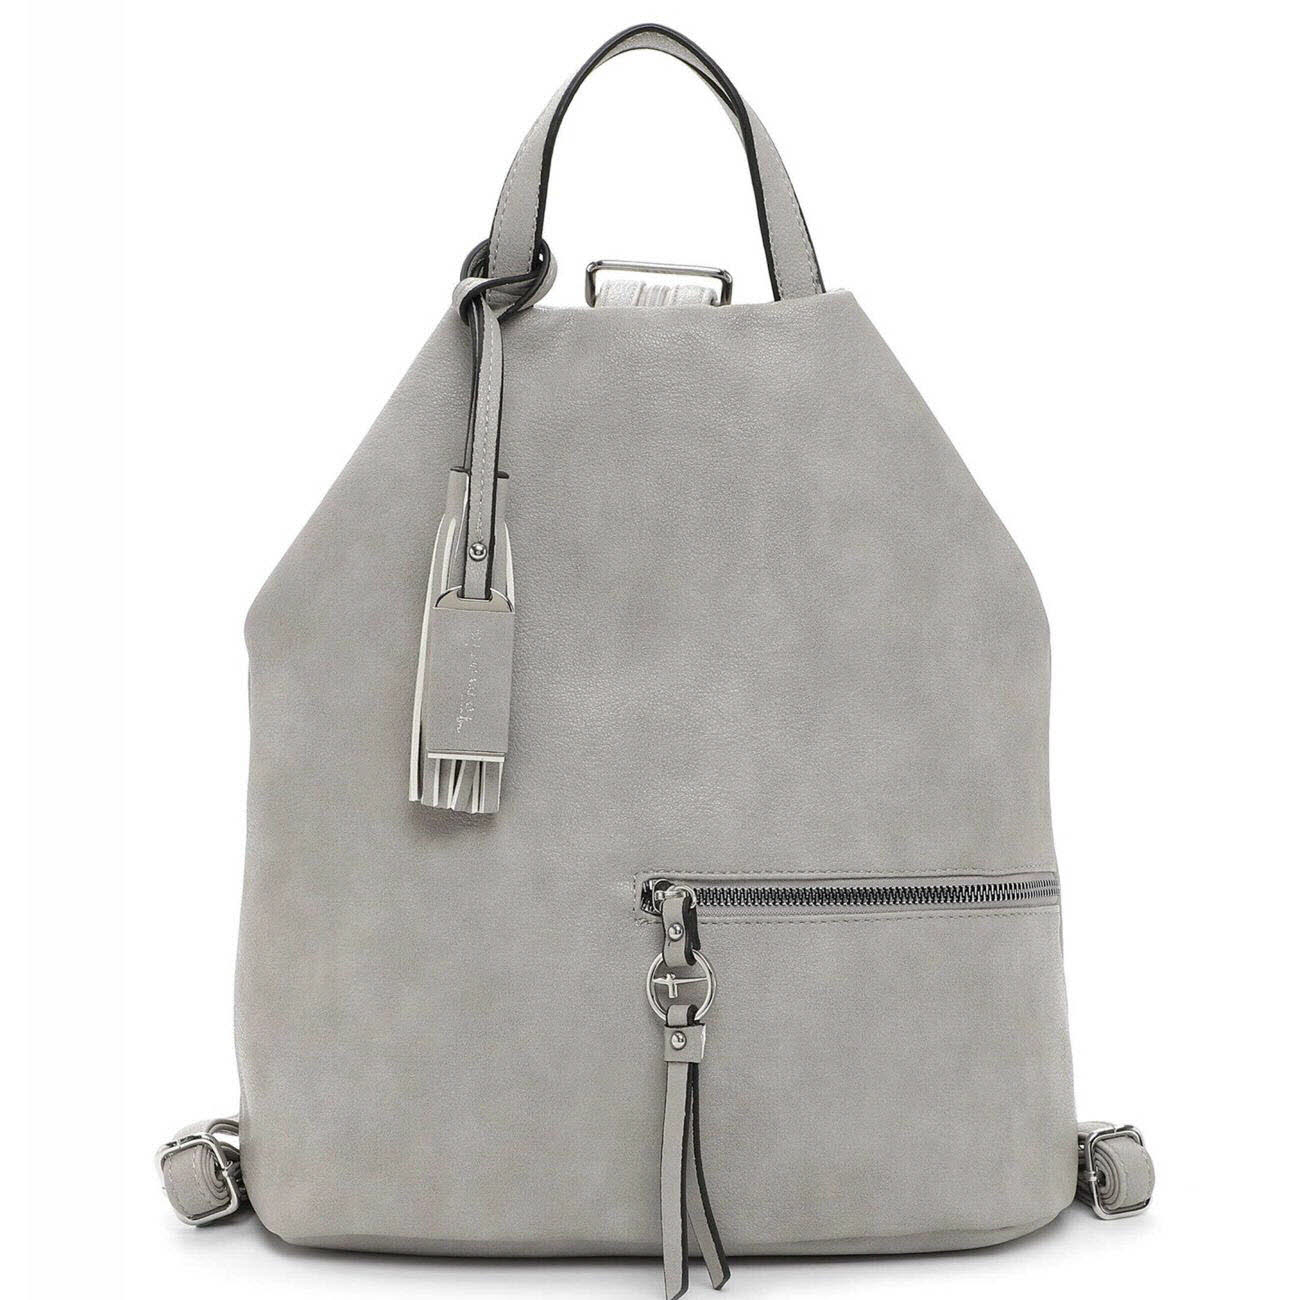 Damen Rucksack von Tamaris auch in Grau erhältlich